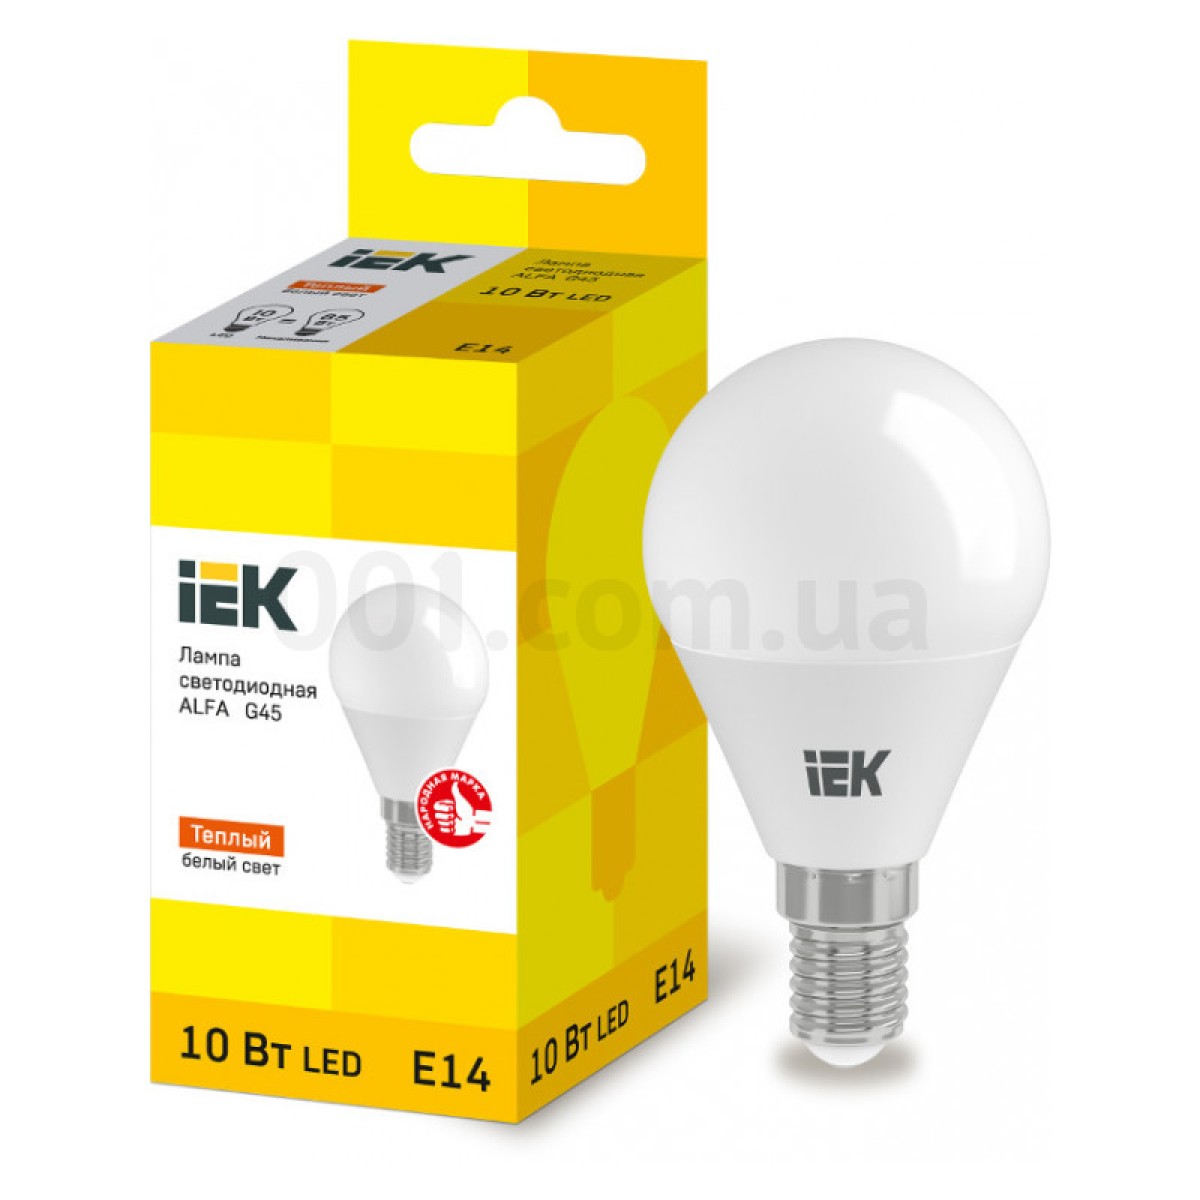 Світлодіодна лампа LED ALFA G45 (куля) 10 Вт 230В 3000К E14, IEK 256_256.jpg